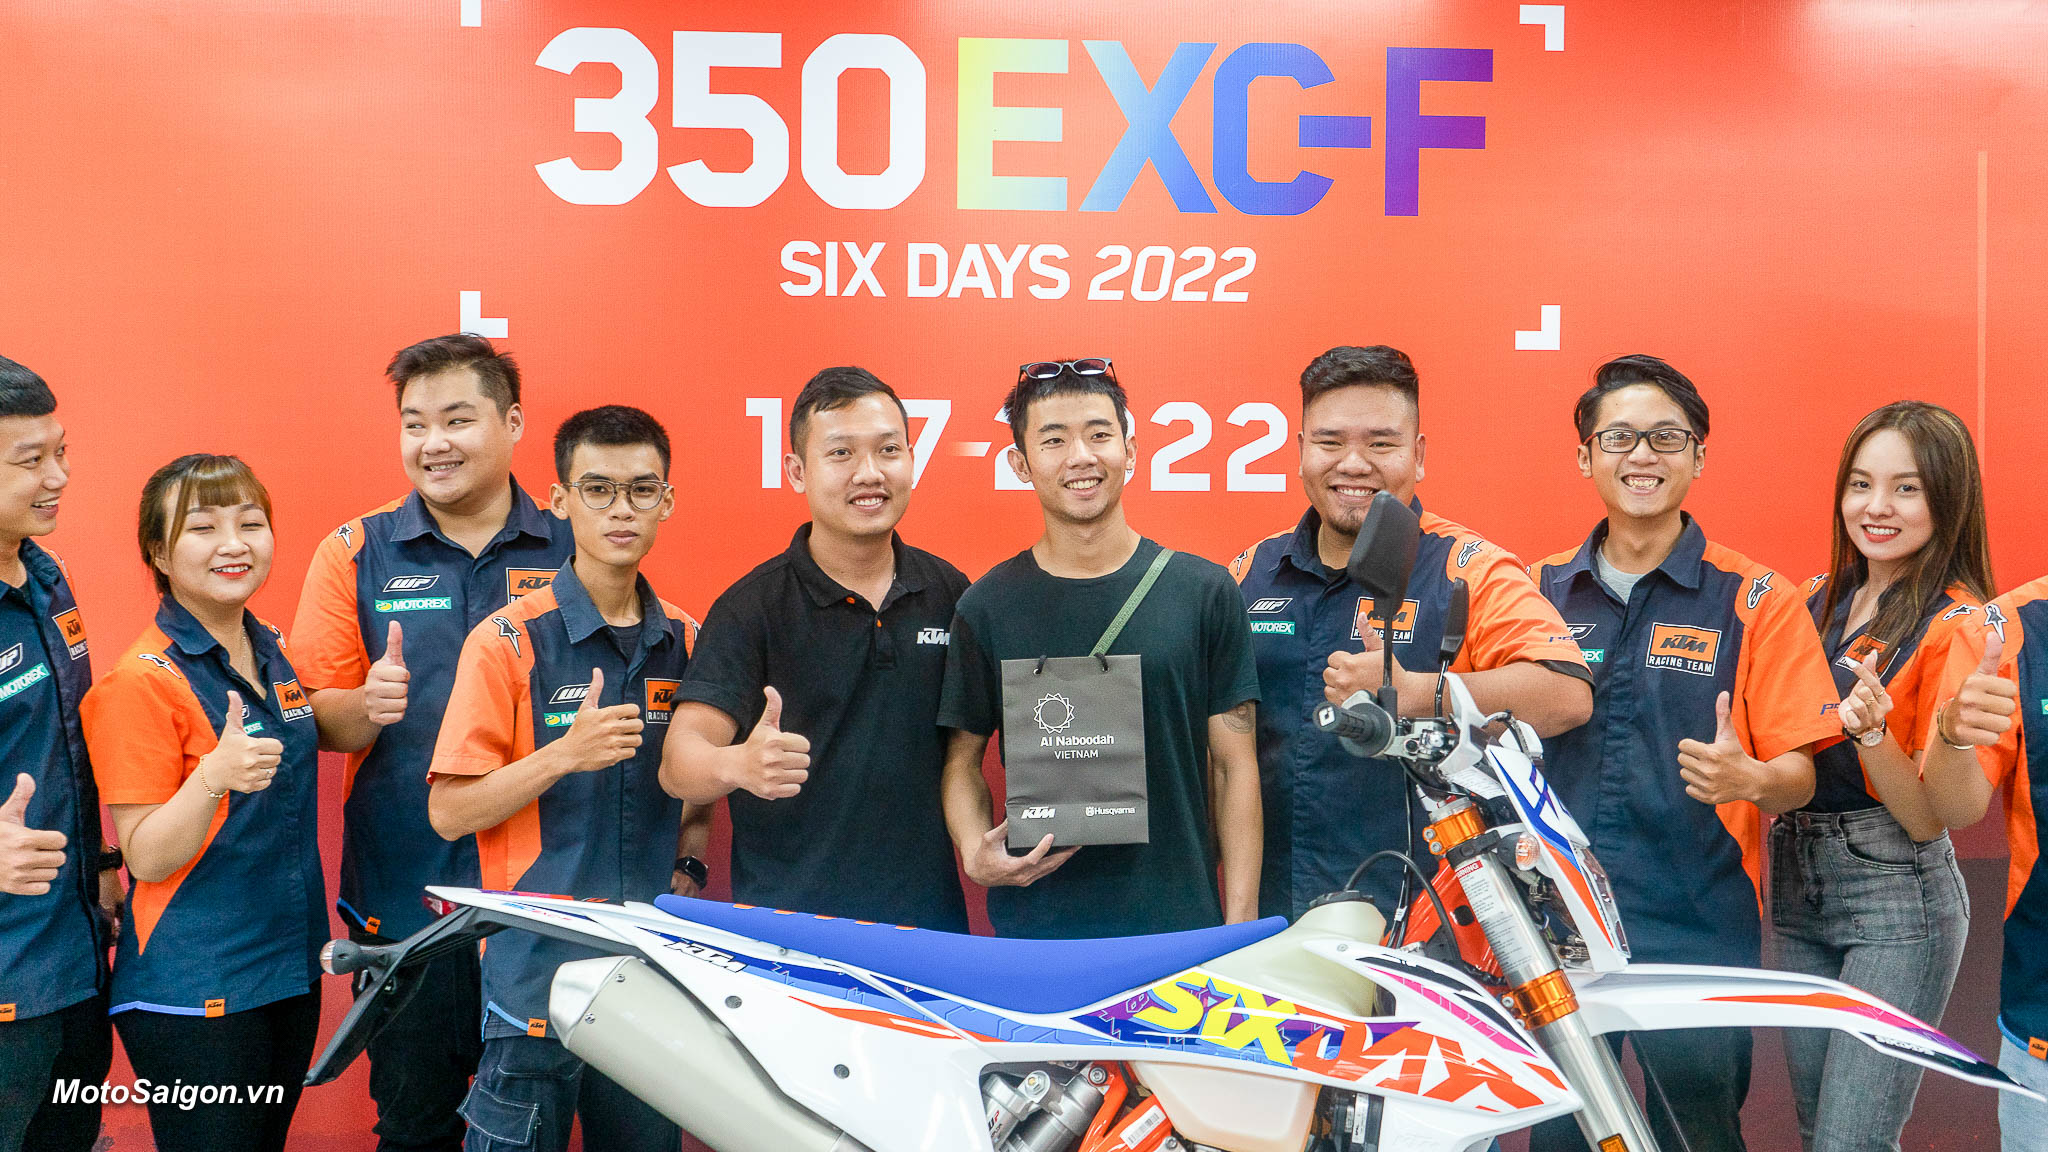 Giá xe KTM 350 EXC-F Six Days 2022 mới nhất